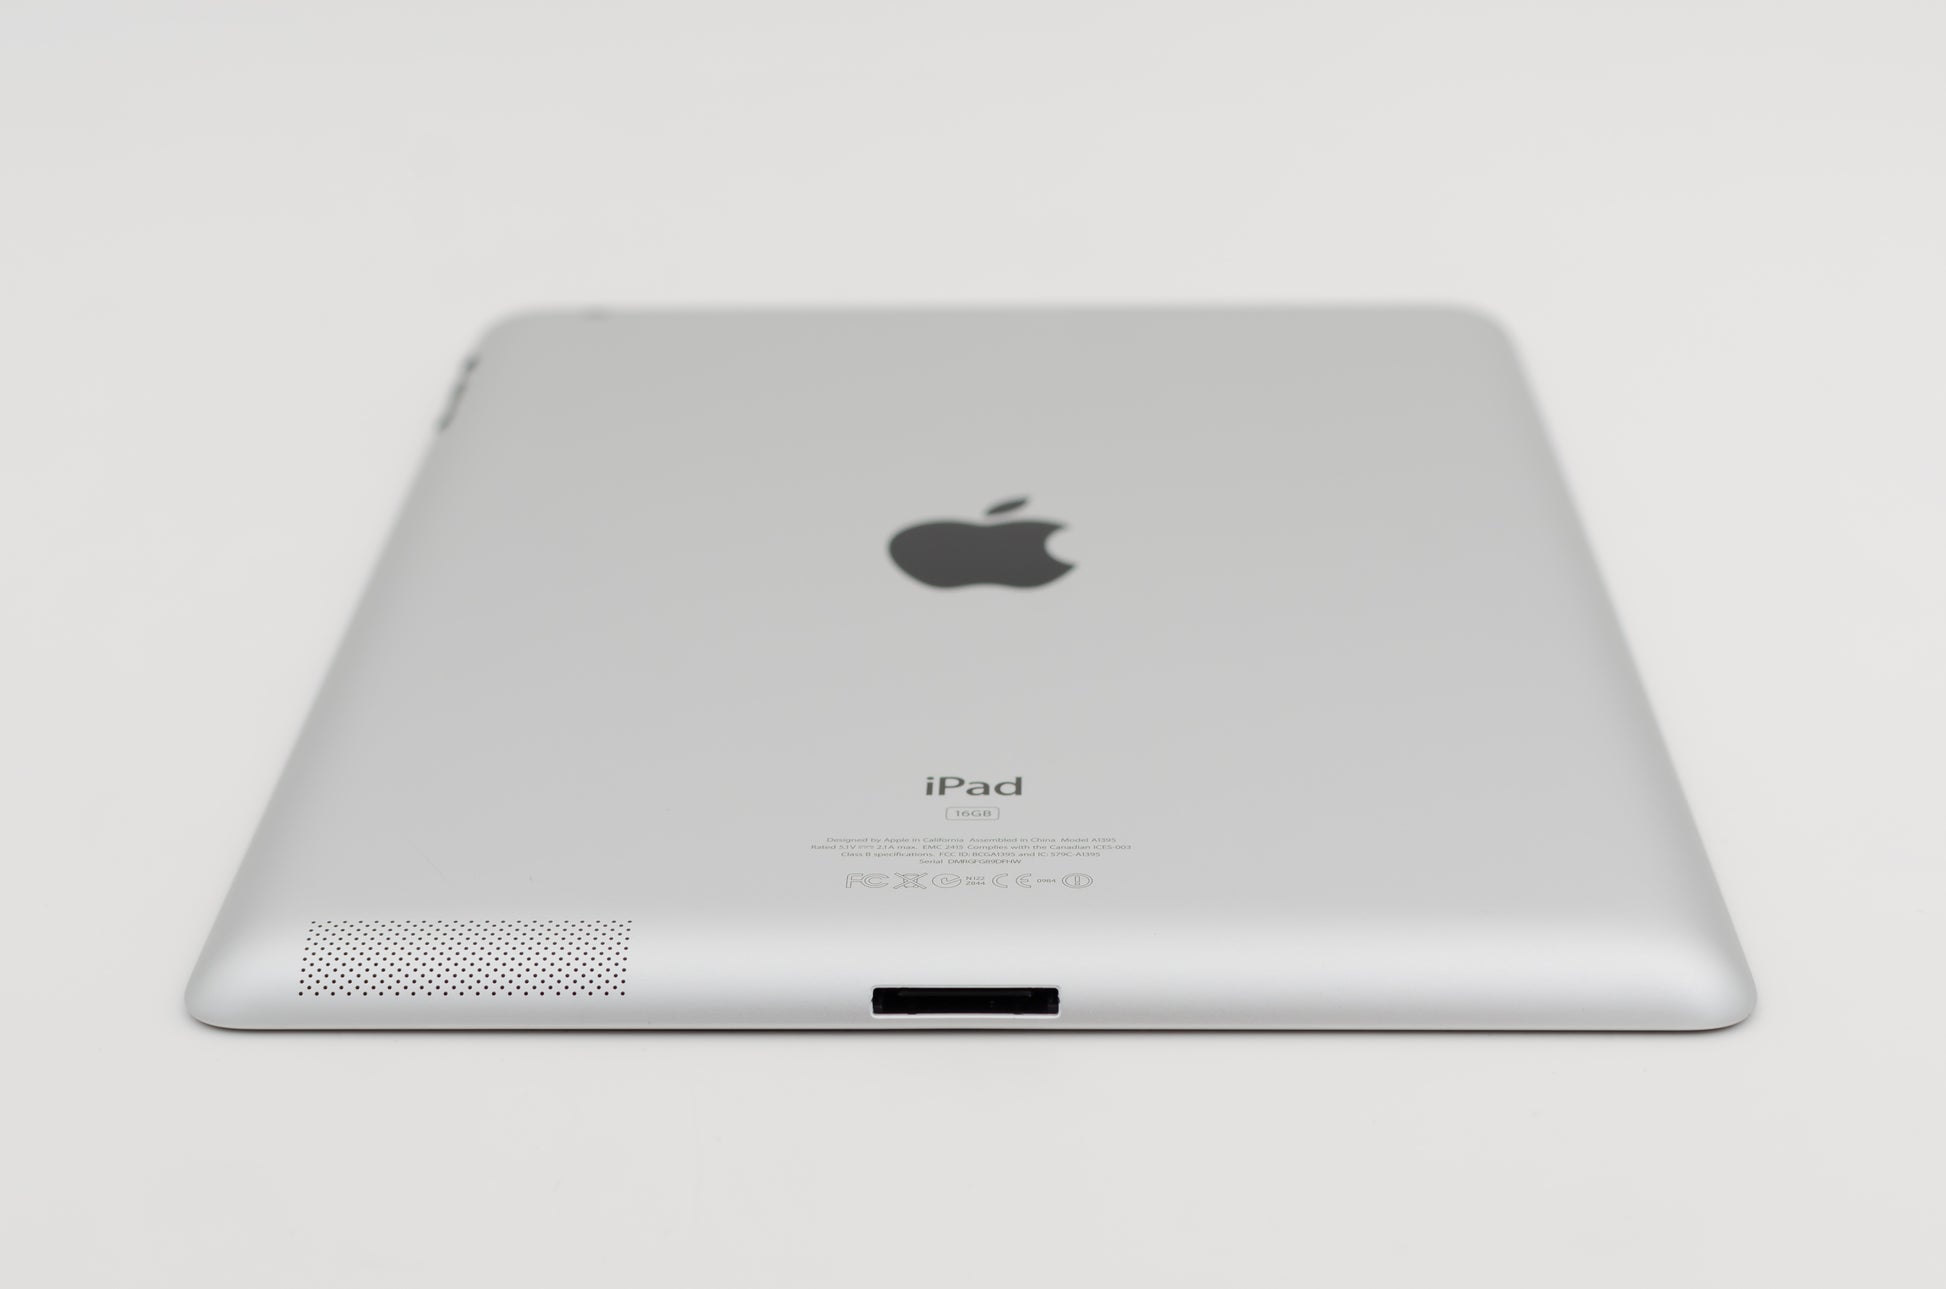 apple-2011-9.7-inch-ipad-2-a1397-silver/black-4